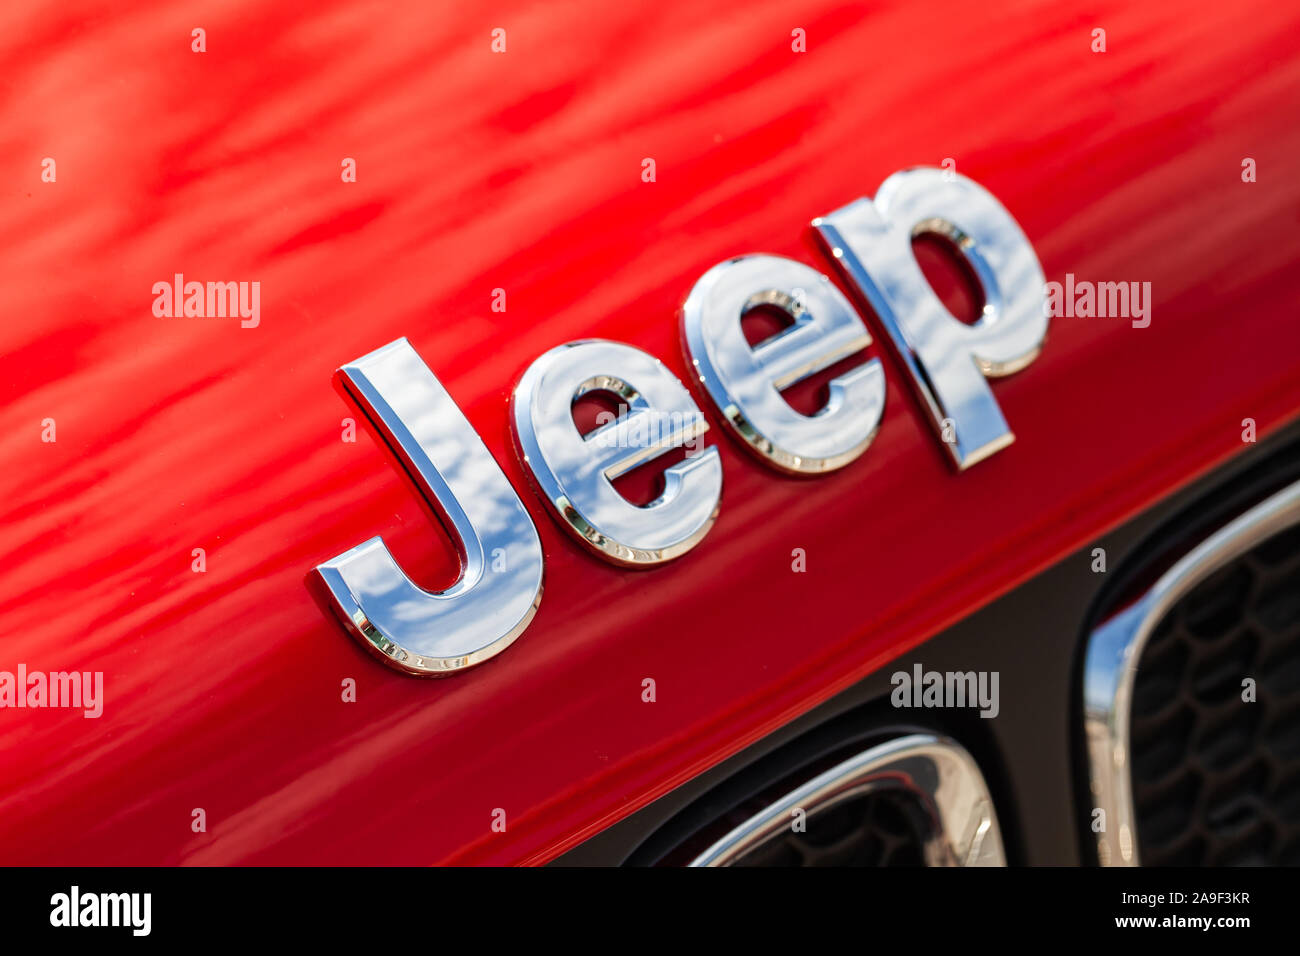 St. Petersburg, Russland - 13. August 2018: Verchromt Jeep auto Logo am Roten SUV Auto Motorhaube eingebaut, Makro Foto mit weichen selektiven Fokus Stockfoto